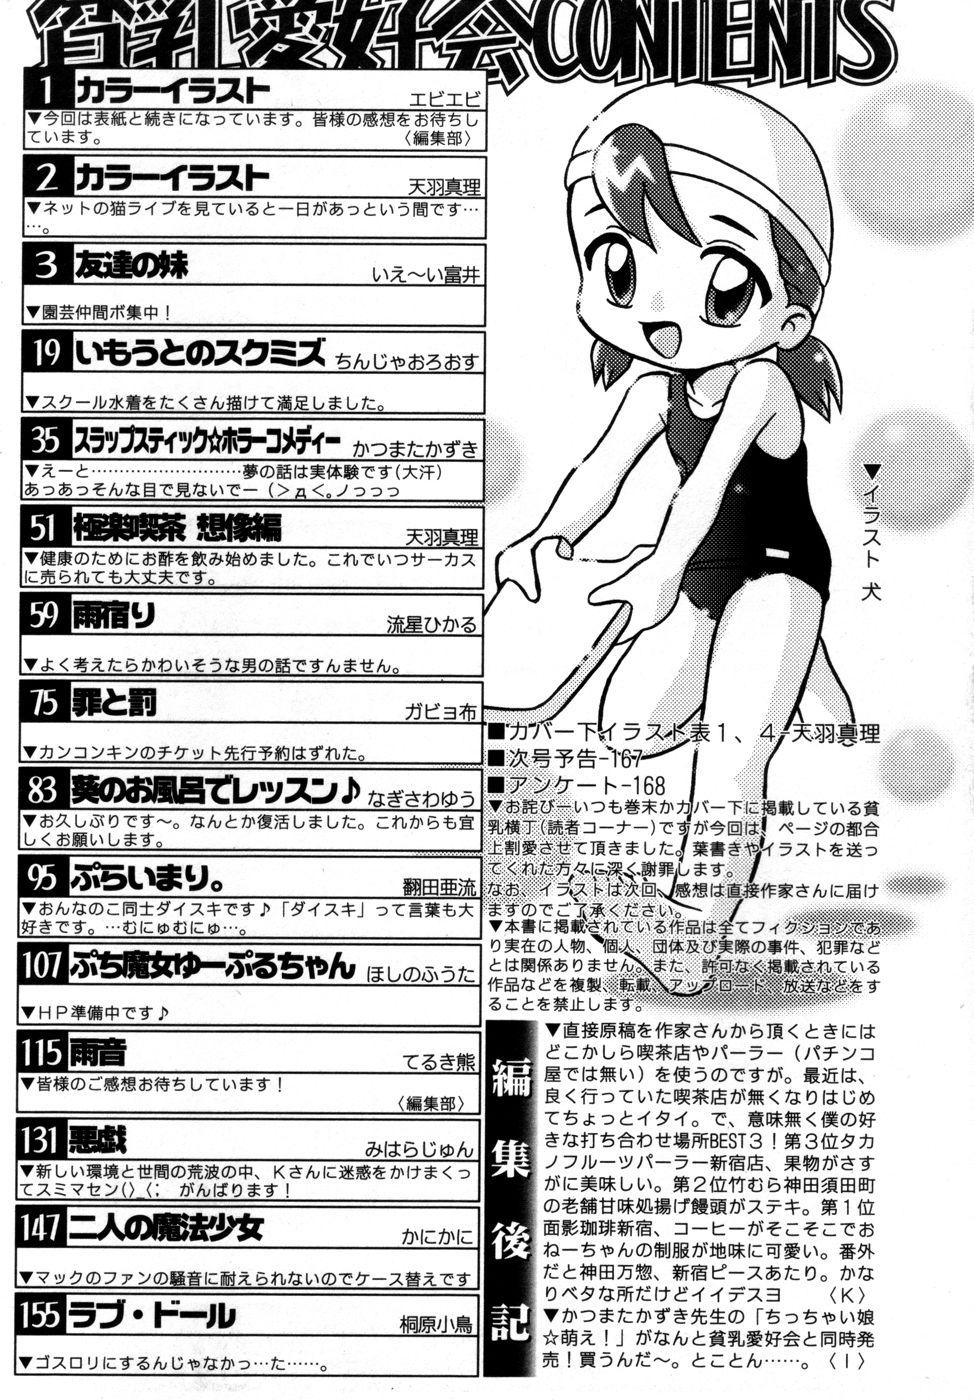 Friend Hin-nyu v27 - Hin-nyu Aikou-kai Play - Page 174